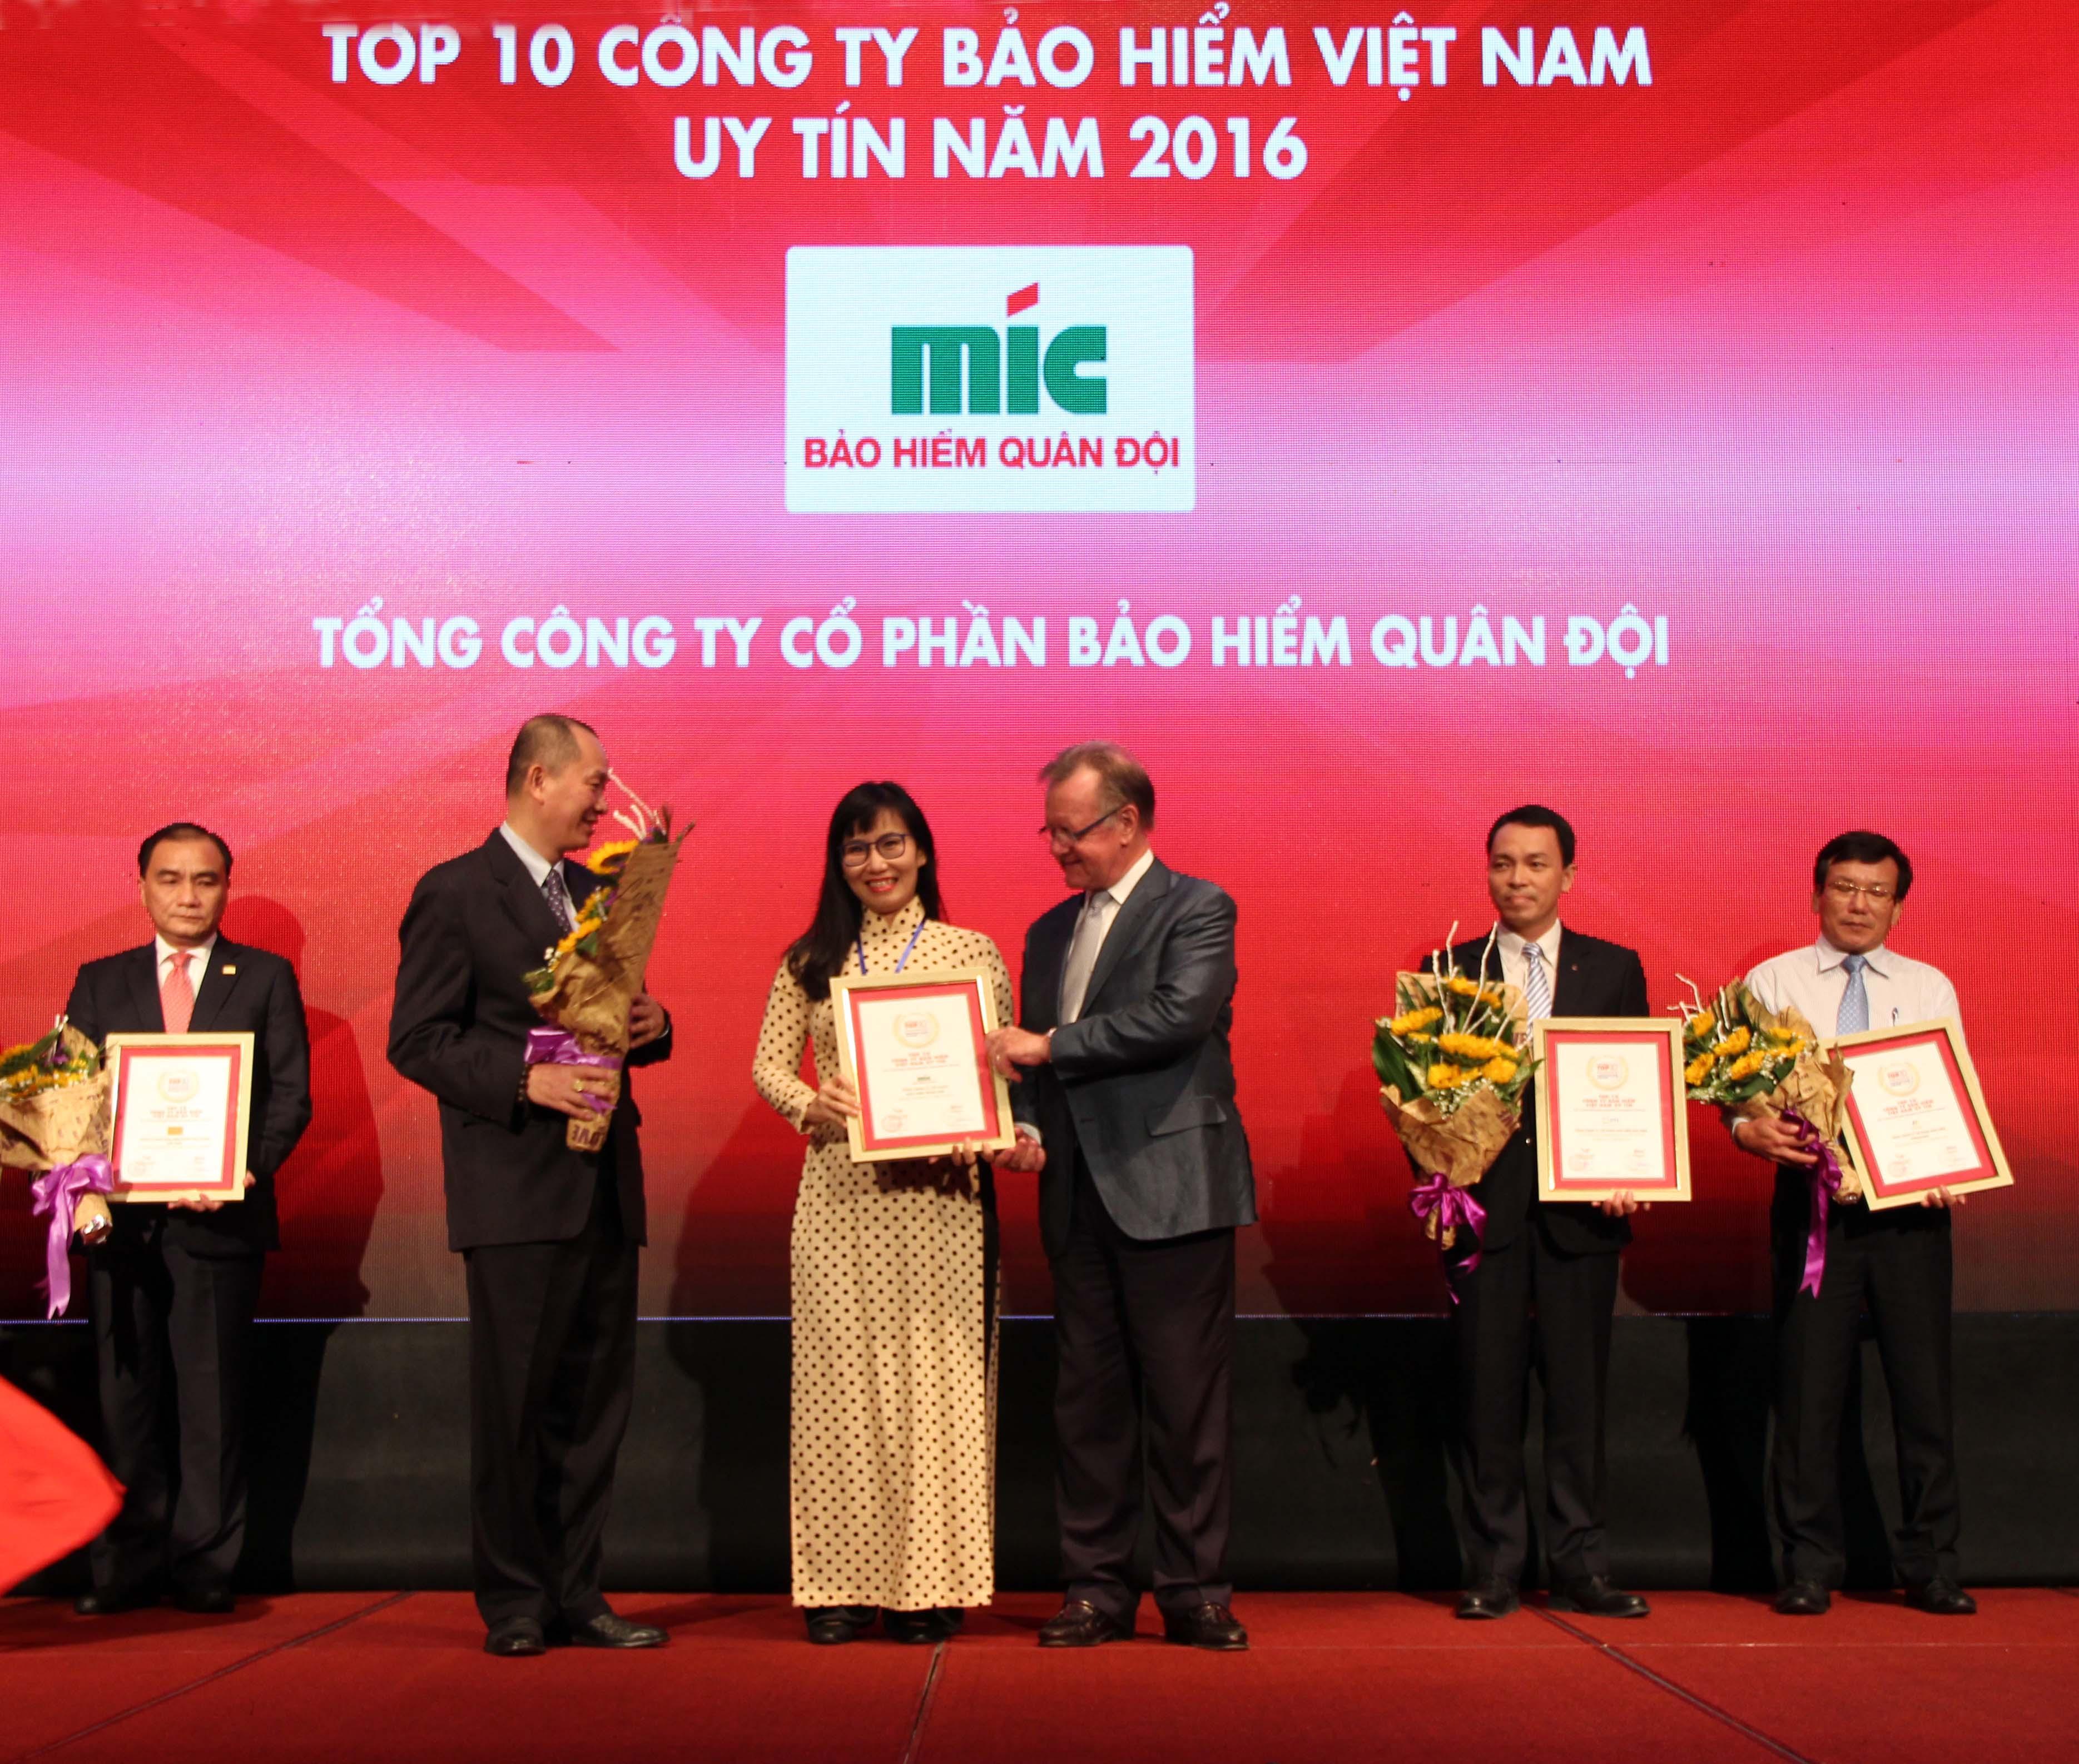 Bà Nguyễn Thị Thu Hằng - Phó Tổng Giám đốc Tổng công ty Cổ phần Bảo hiểm Quân đội (MIC) nhận Giấy chứng nhận TOP 10 DNBH uy tín 2016 tại Việt Nam